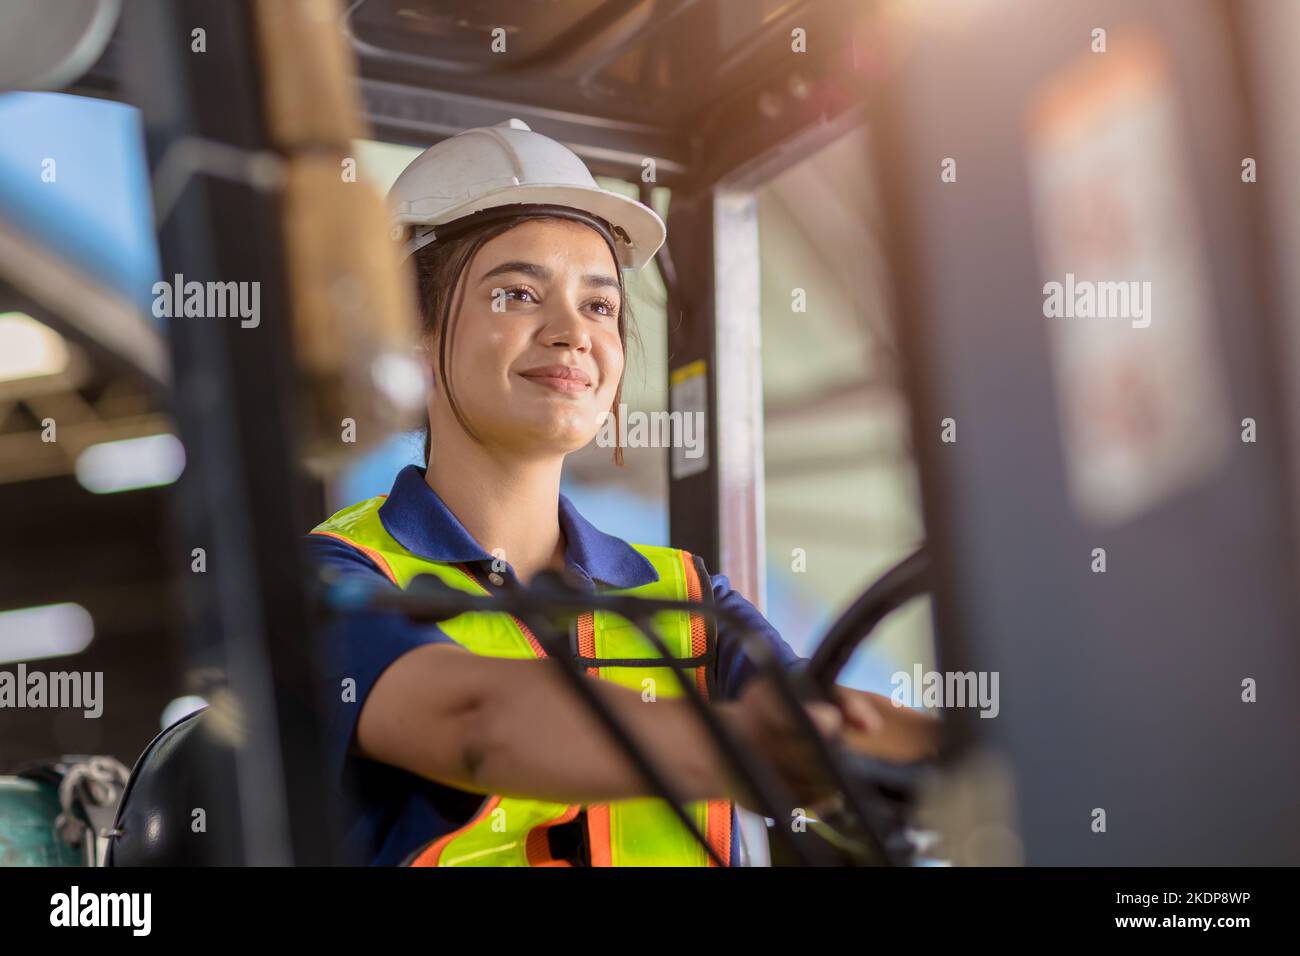 Donna indiana lavoratore magazzino carrello elevatore a forche personale felice sorridente godere di lavorare Foto Stock